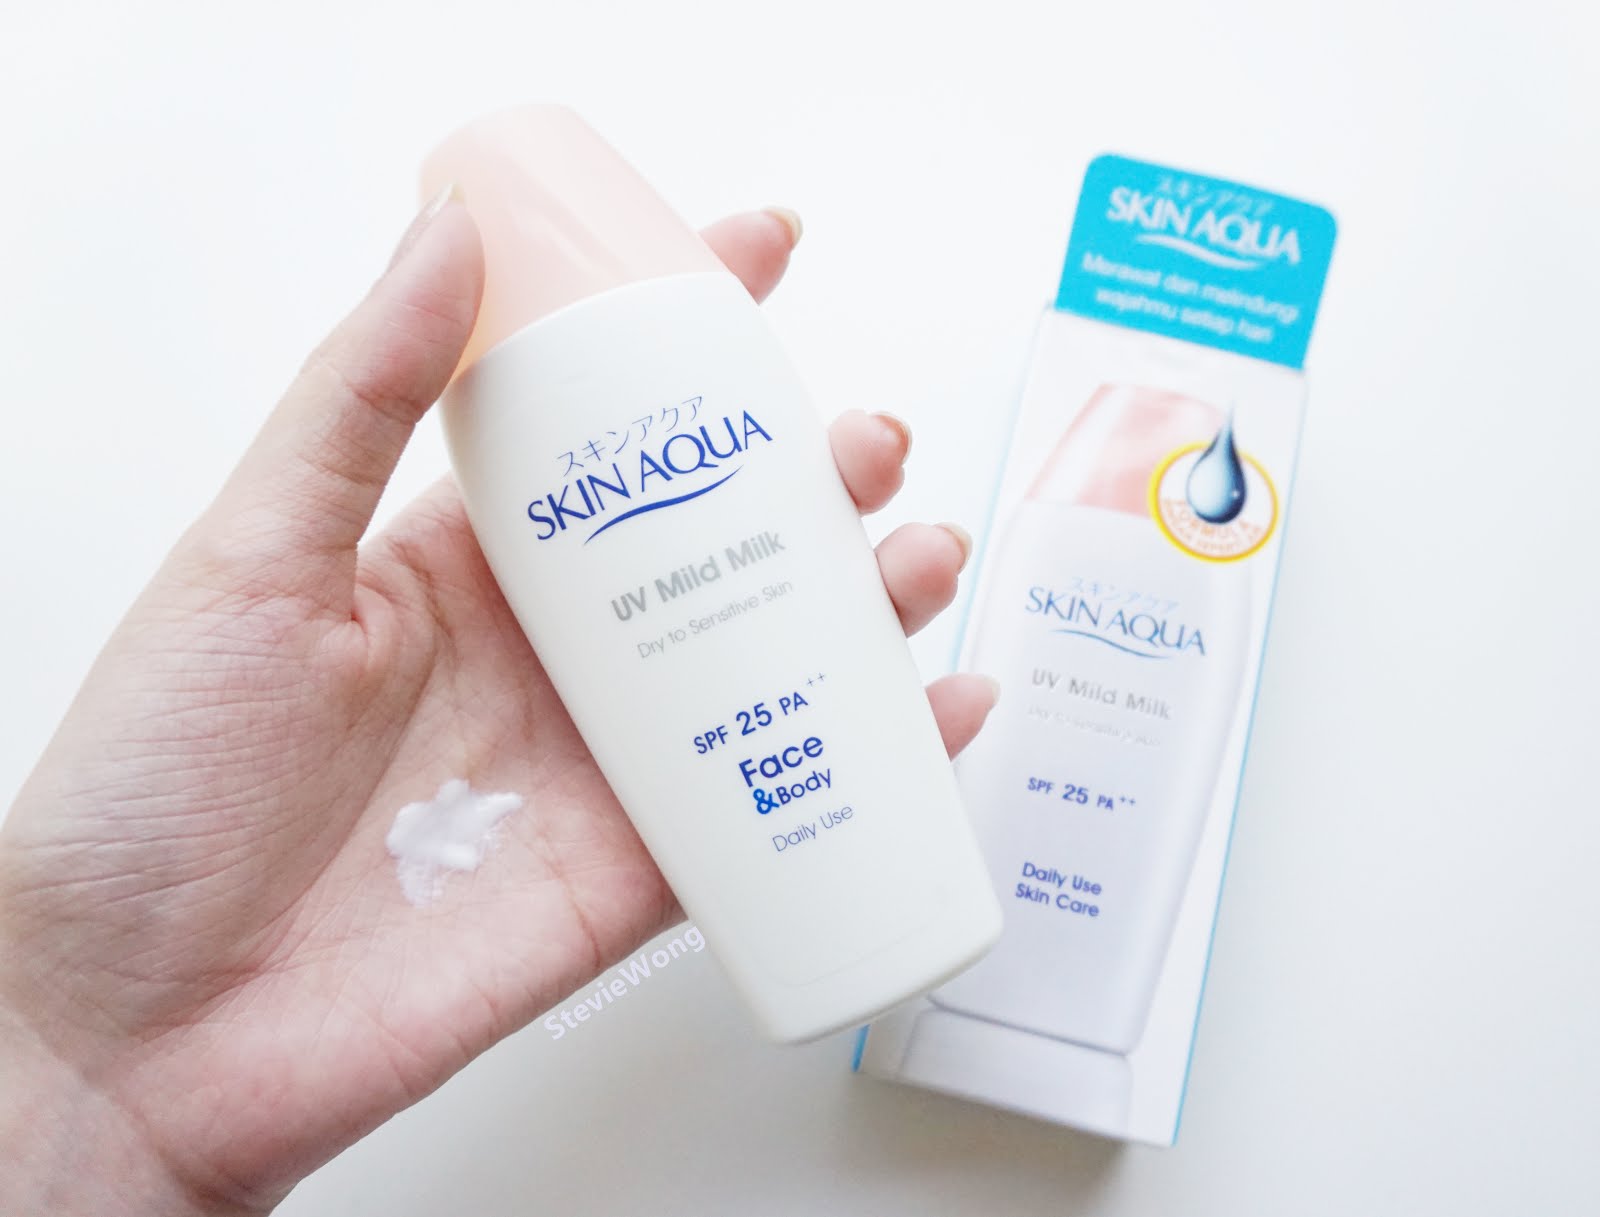 Skin Aqua UV Mild Milk Dry to Sensitive Skin SPF 25 PA++